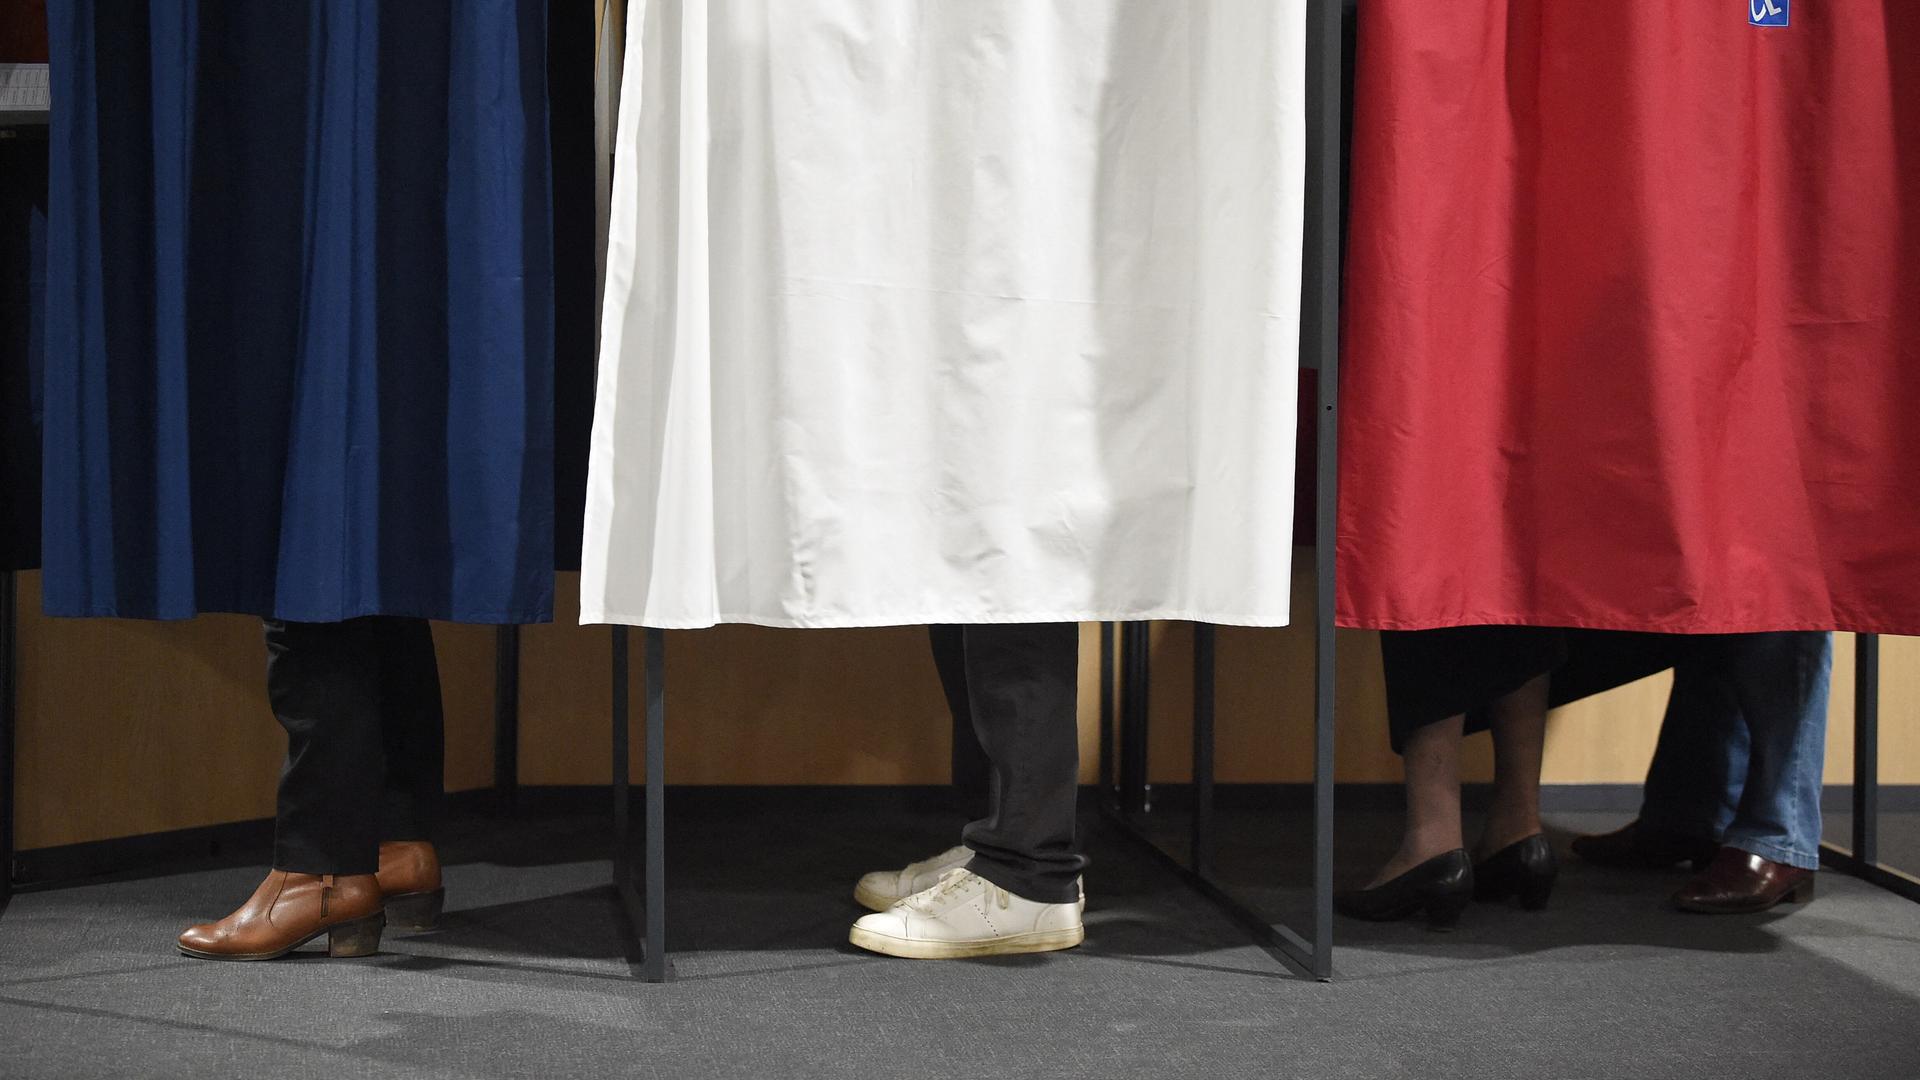 Eine Wahlkabine deren Vorhänge die Farben der Französischen Flagge zeigen. Hinter den Vorhängen sind die Füsse von Wählenden zu sehen.